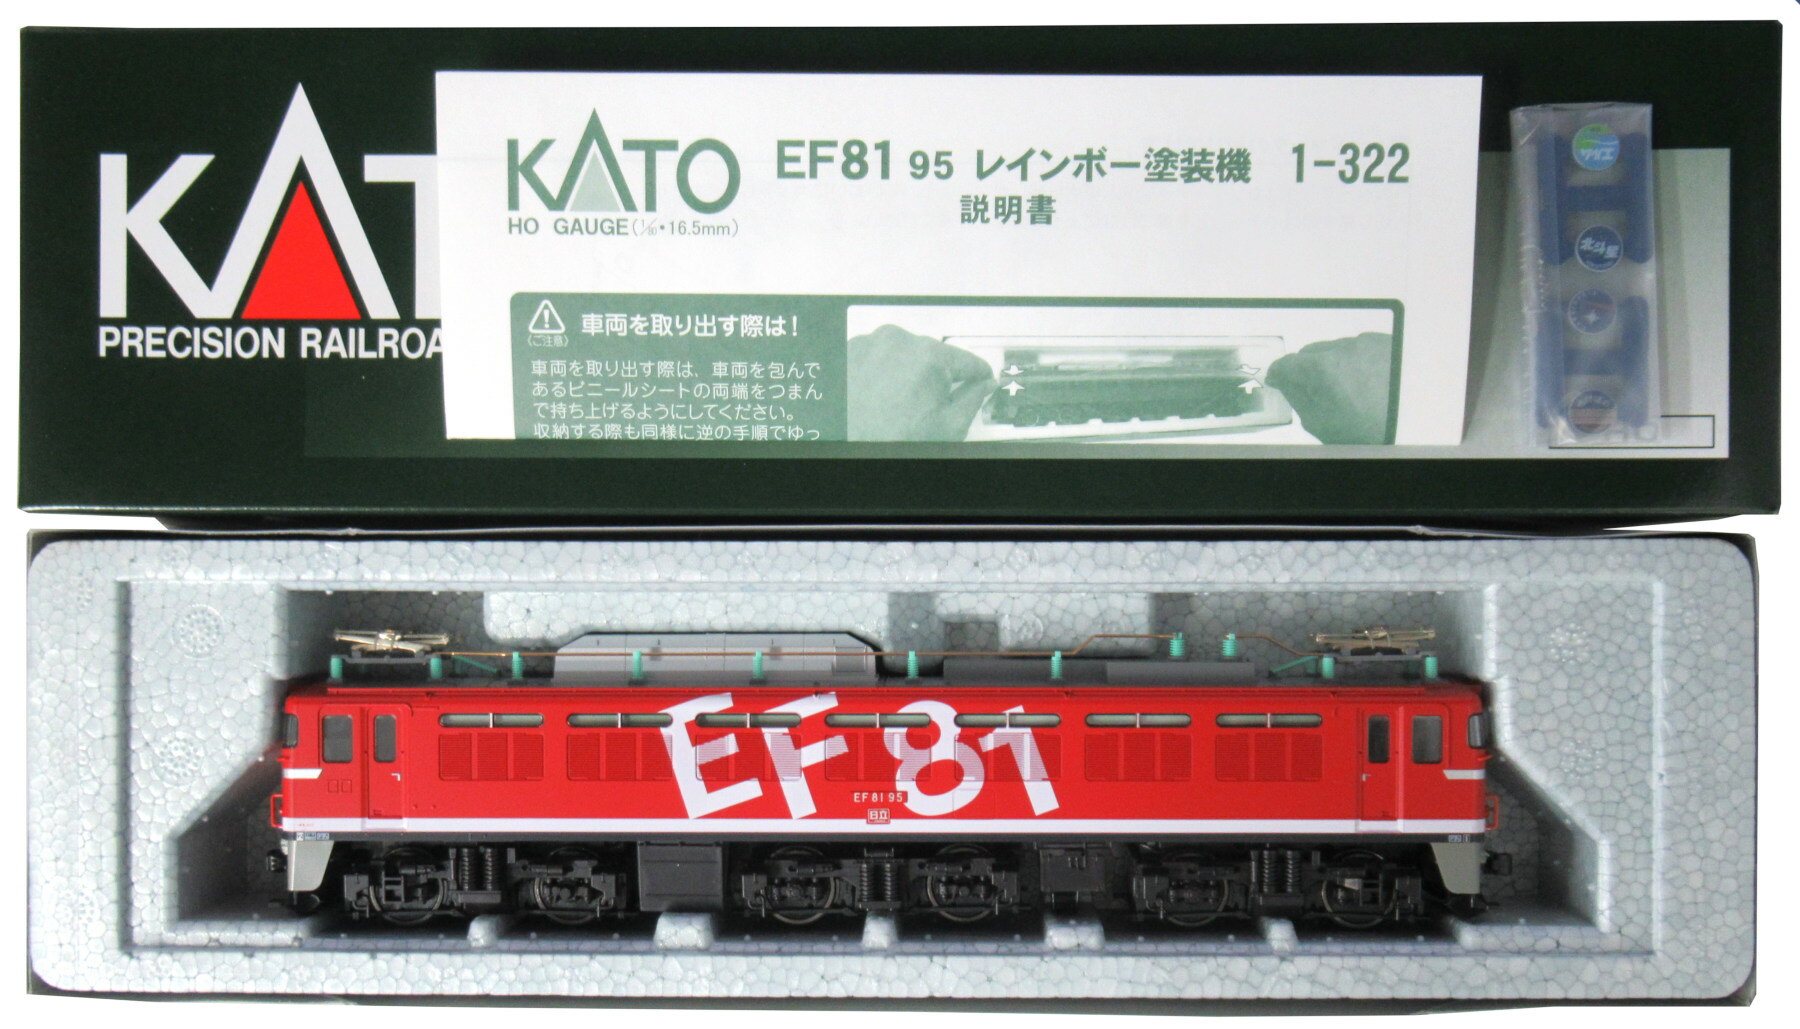 【中古】HOゲージ KATO(カトー) 1-322 EF81 95 レインボー塗装機 【A´】 外箱傷み